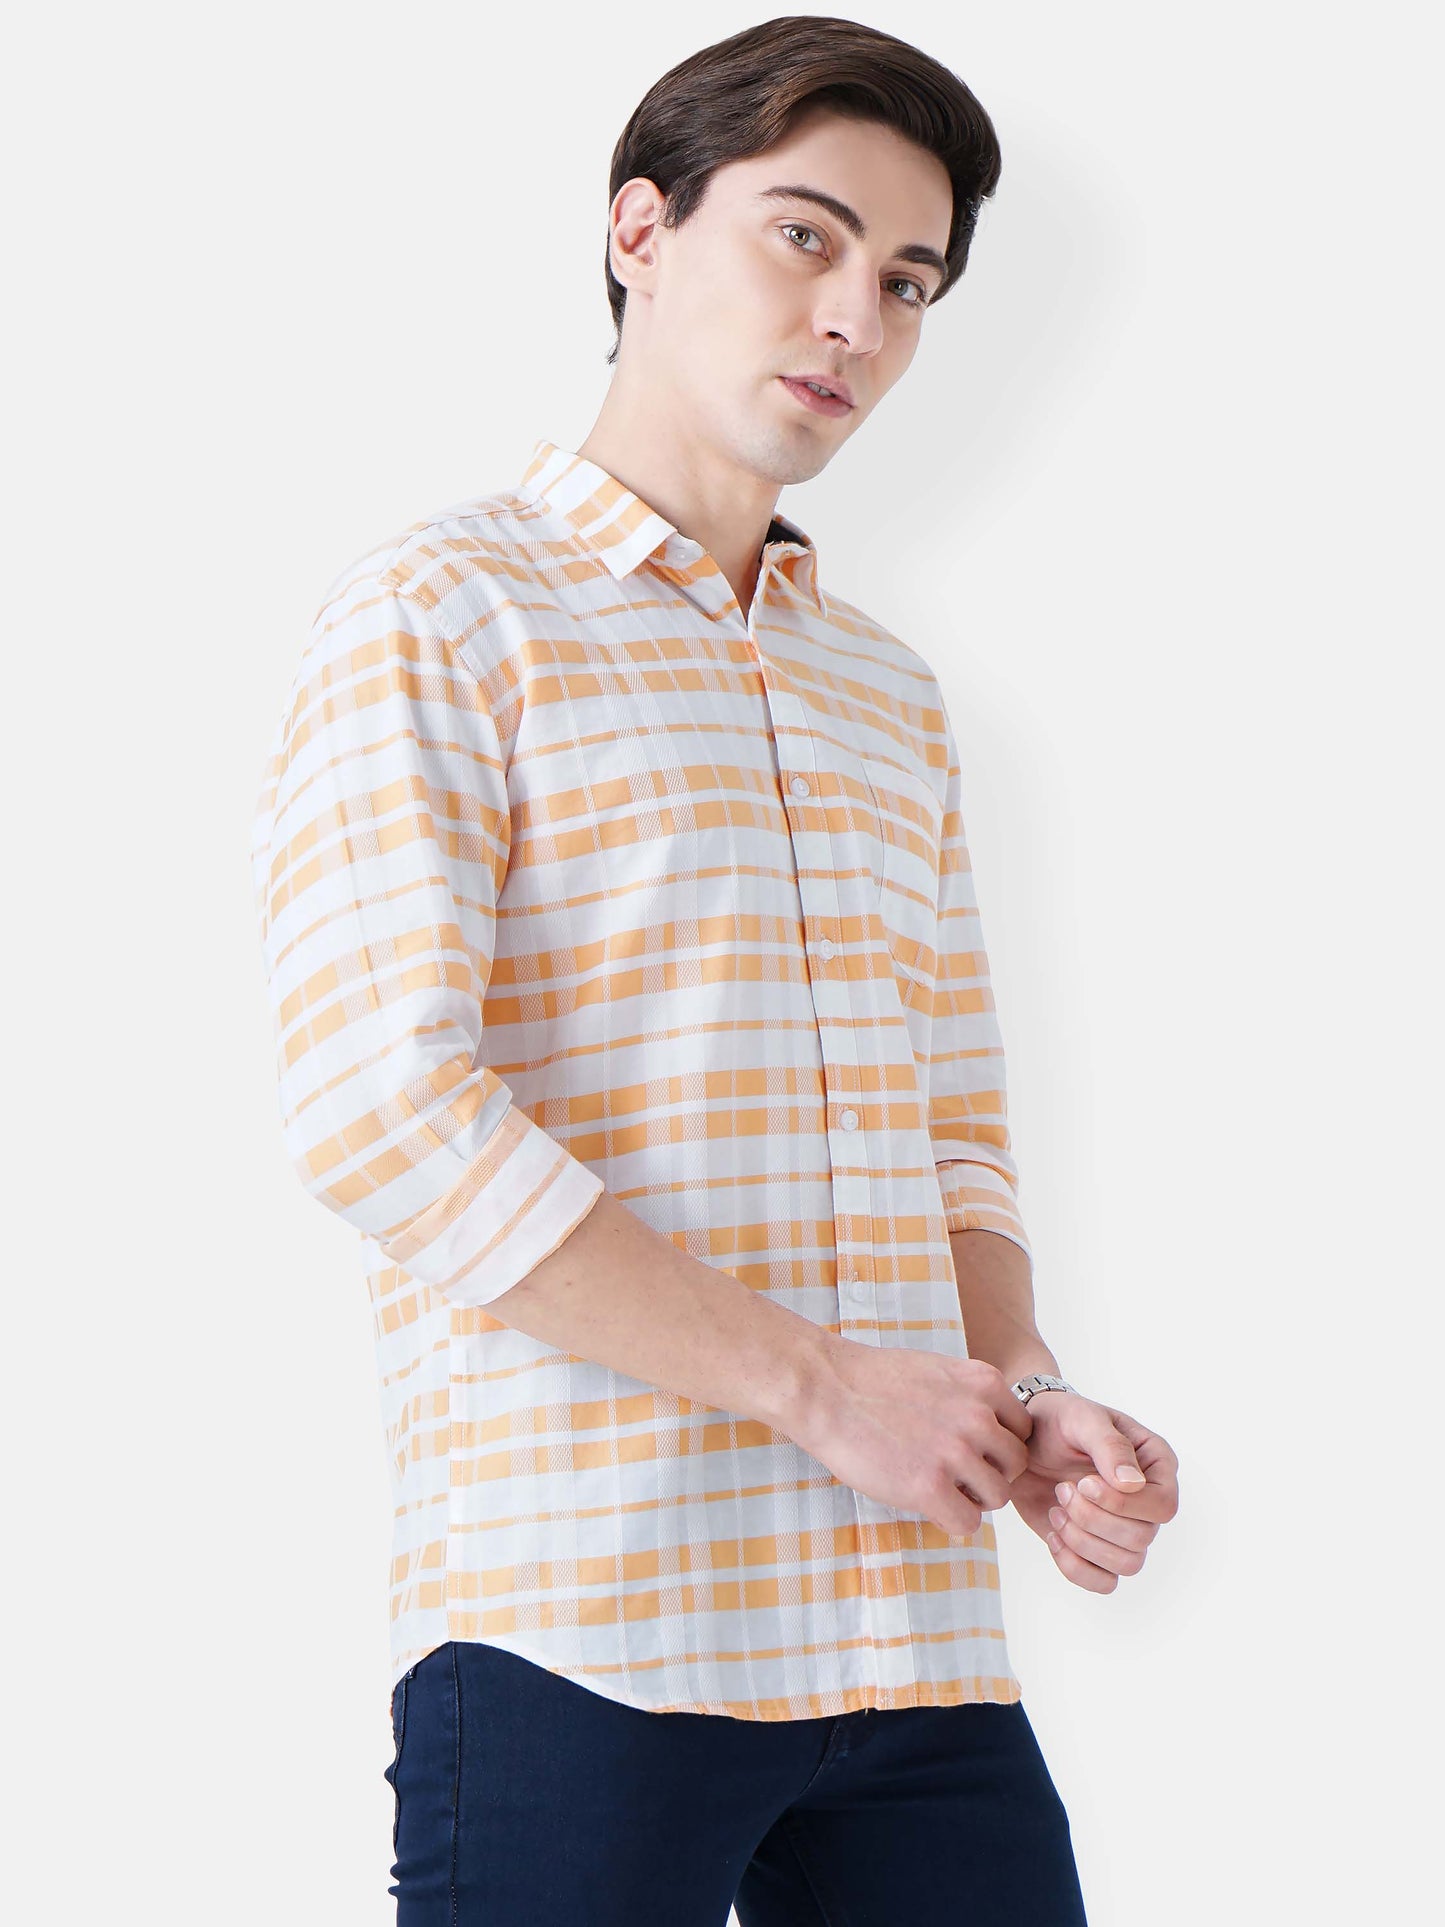 Clam Shell Stripe Shirt